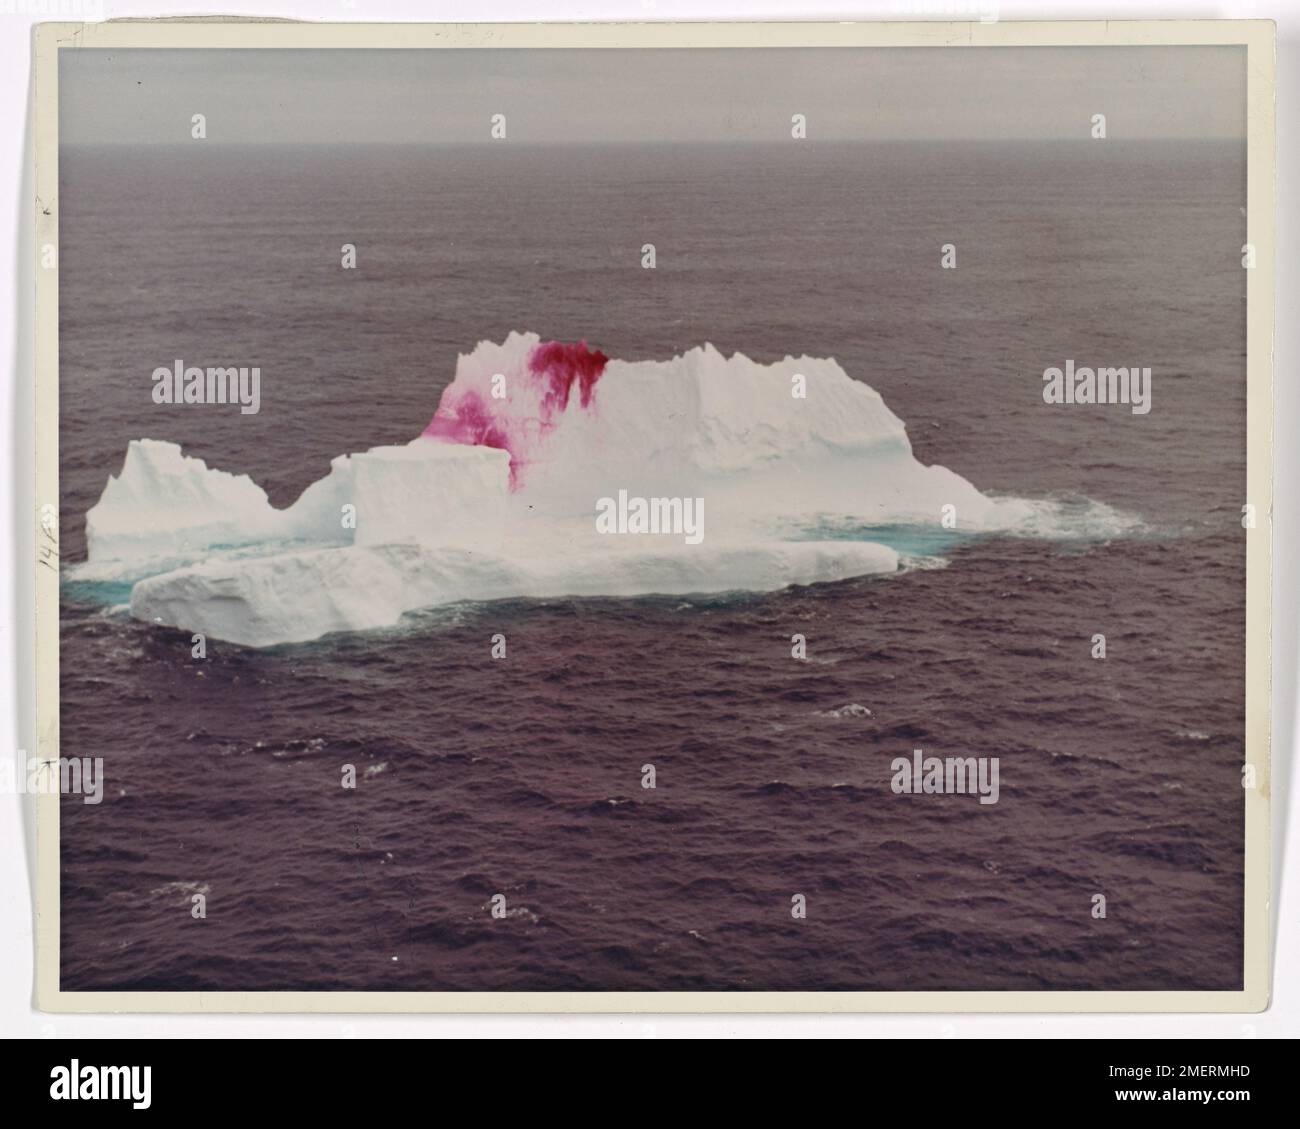 Marquage aérien de colorant Iceberg. Patrouille internationale des glaces - un iceberg au large de la côte du Labrador bombardé d'un vermillion de taches par un avion de patrouille des glaces Hercules HC-130-B de la Garde côtière. Banque D'Images